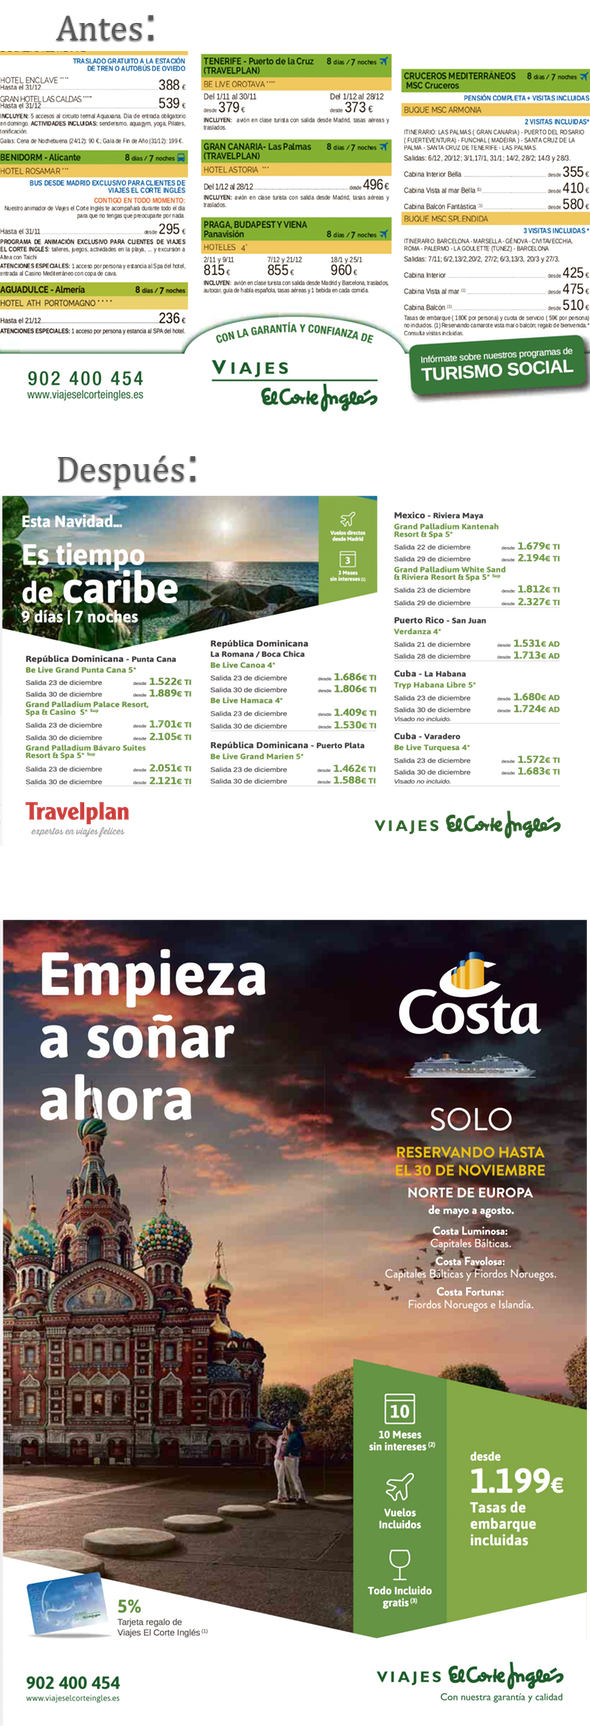 FOTONOTICIA: Viajes Corte Inglés moderniza la estética de sus anuncios | Noticias de Agencias de viajes, | Revista de turismo Preferente.com